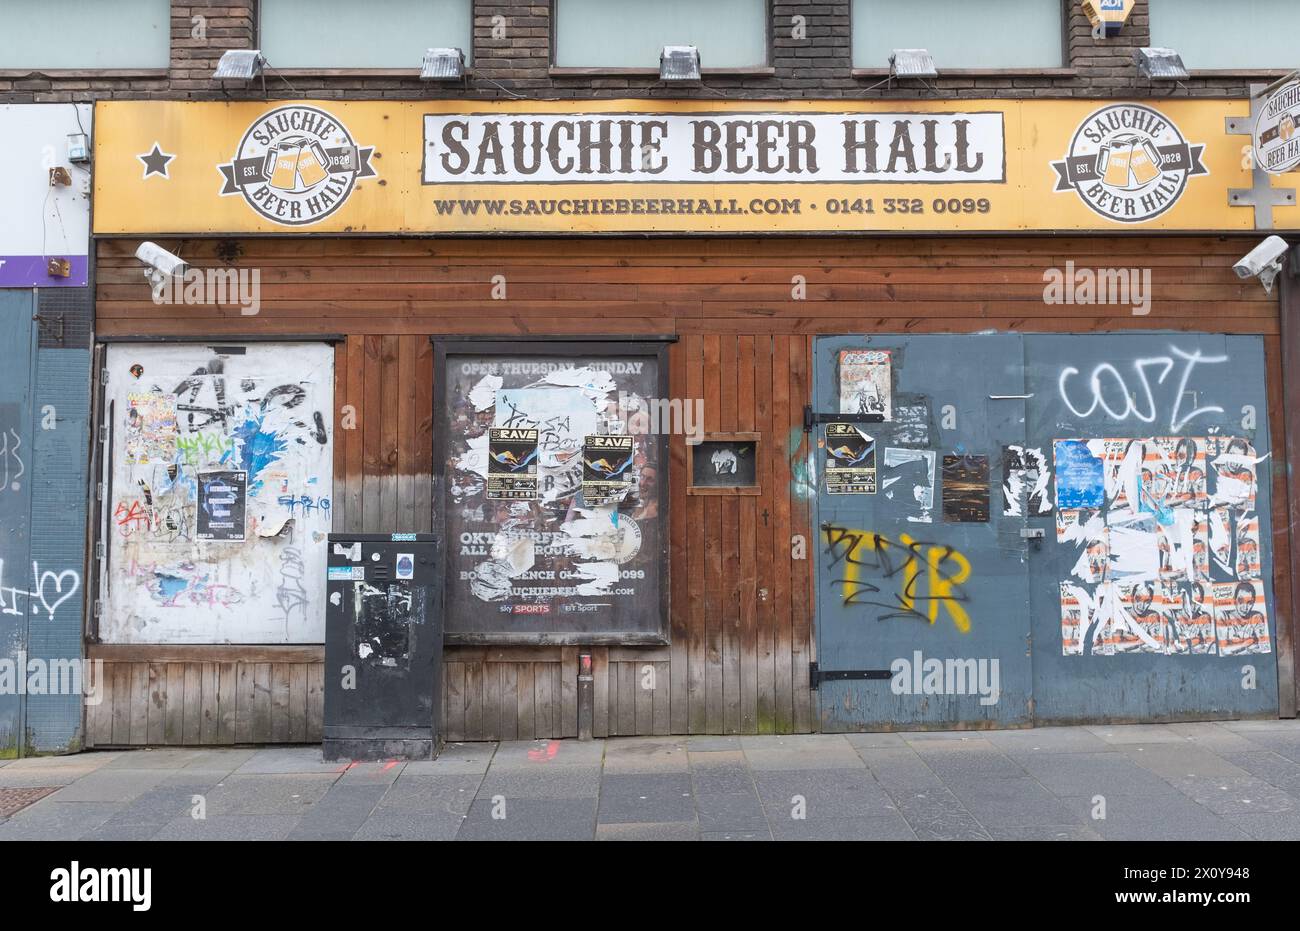 Facciata dell'ora chiusa Sauchie Beer Hall in Sauchiehall Street, nel centro di Glasgow, Scozia. Questo dimostra che il settore alberghiero sta lottando. Foto Stock